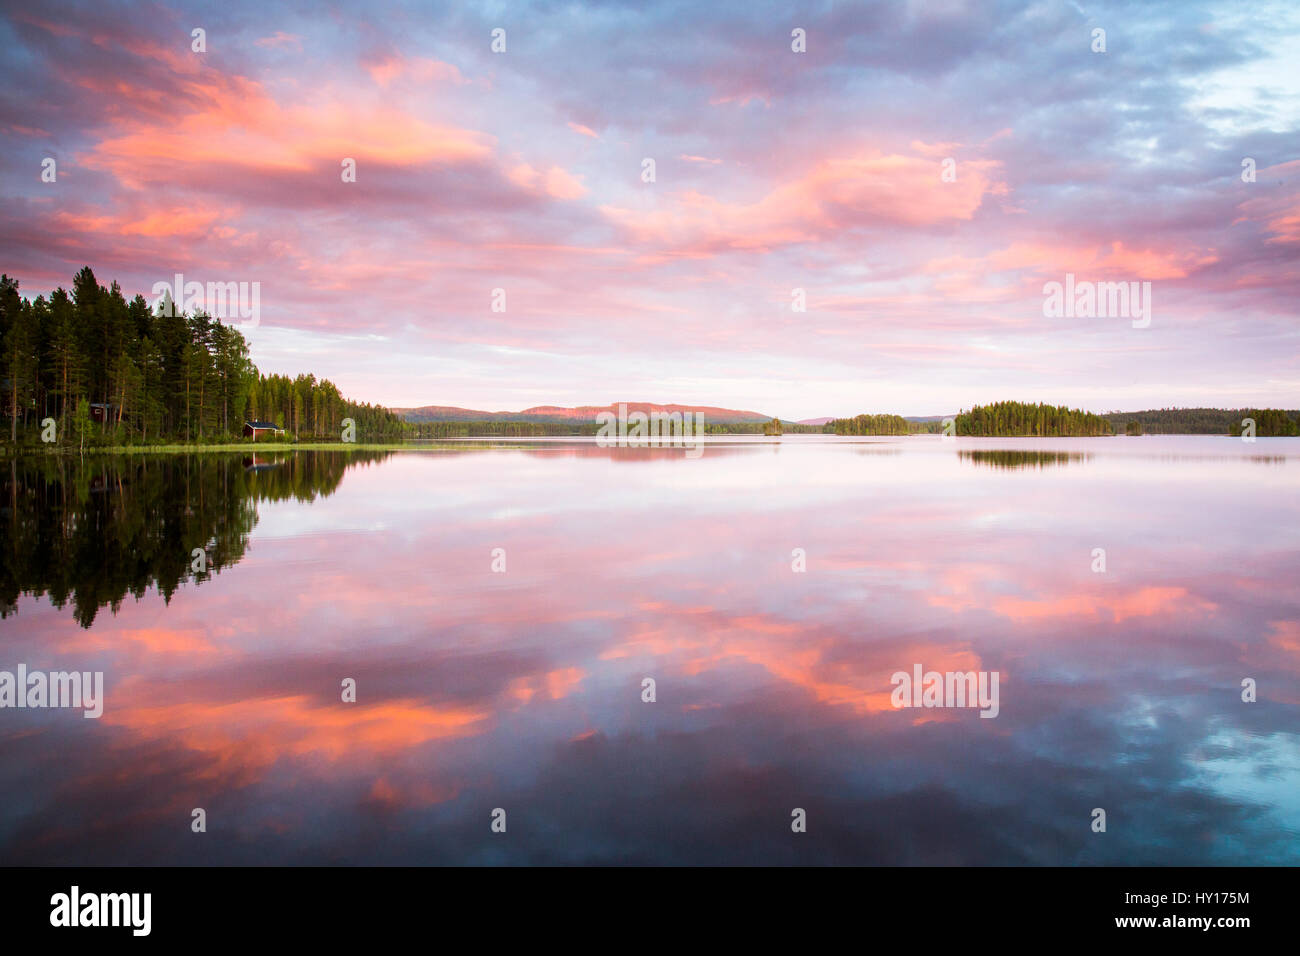 Sweden, Medelpad, Storskalssjon, Scenic view of lake at sunset Stock Photo